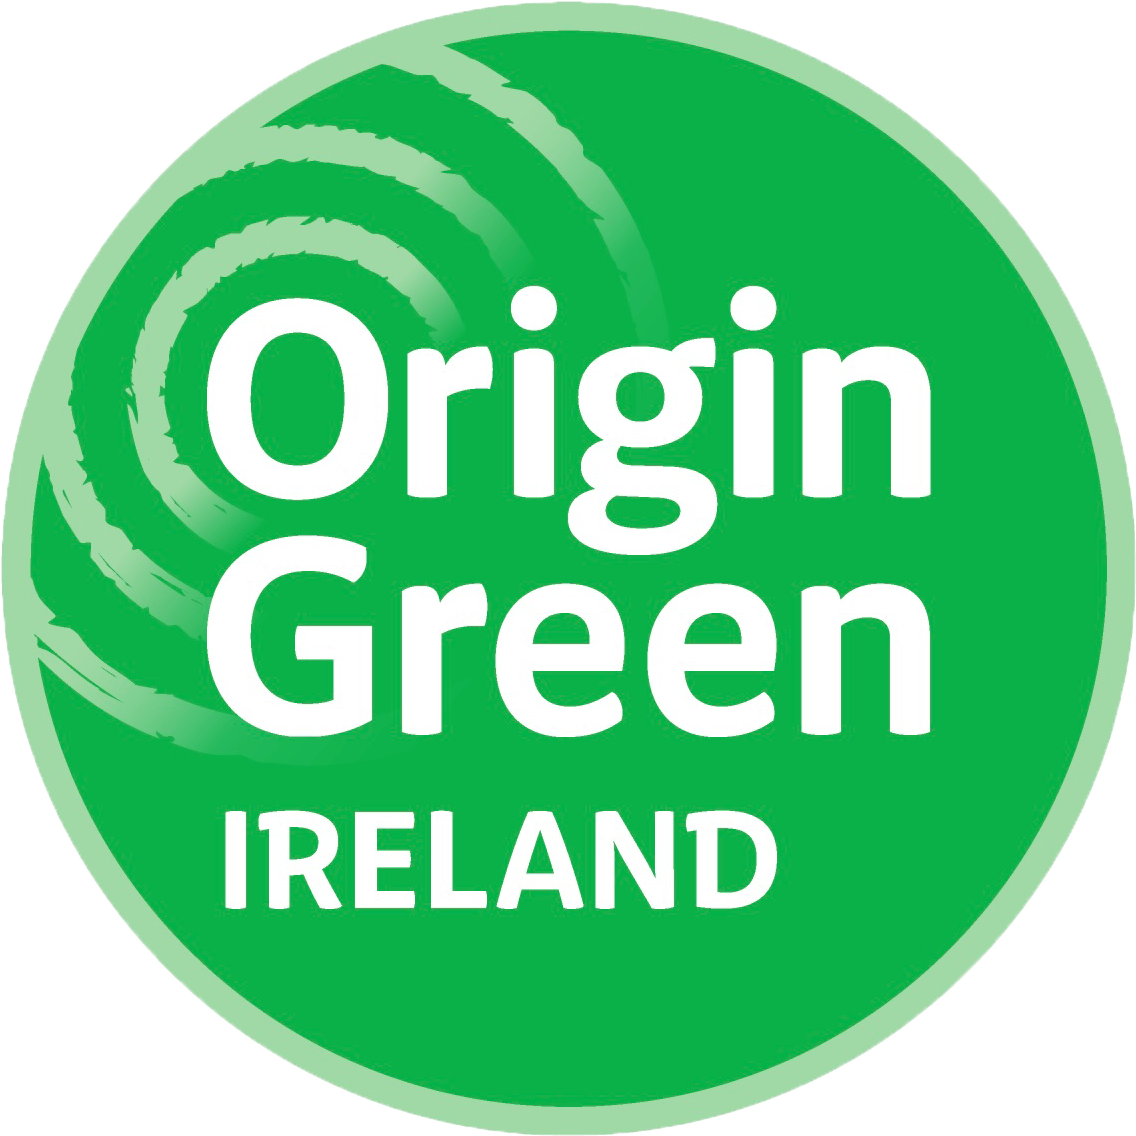 Origin green